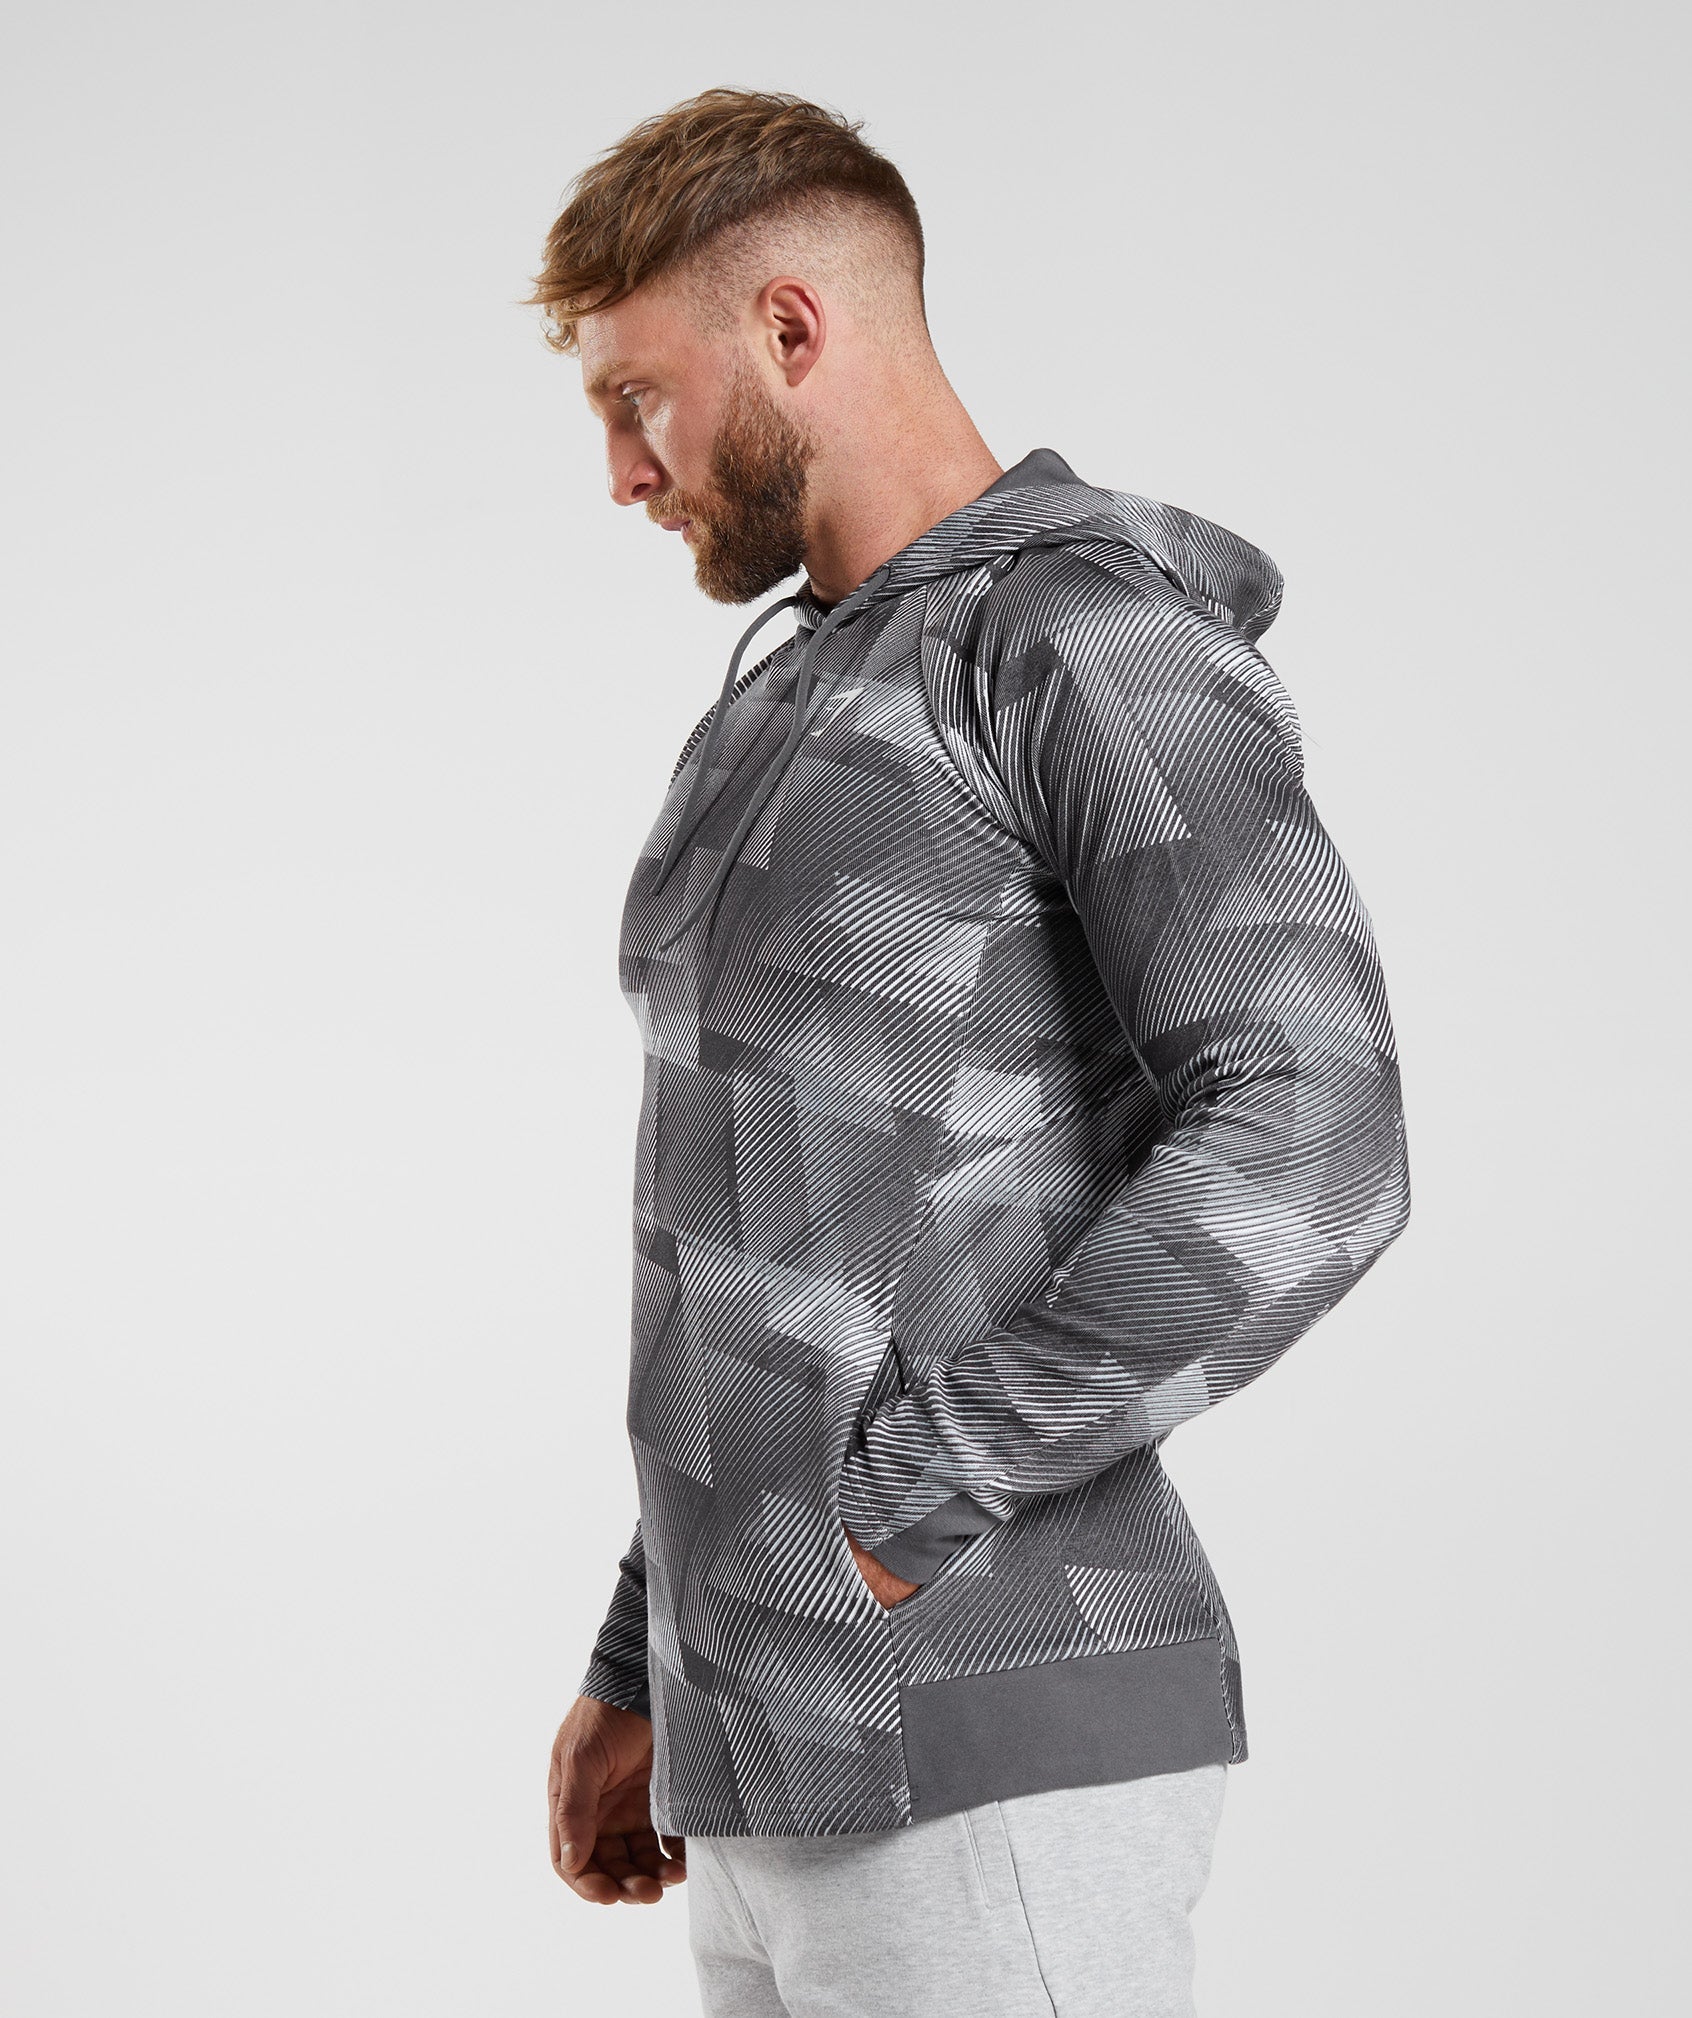 Nike Kobe Mambula Hypermesh Jacket in Gray for Men